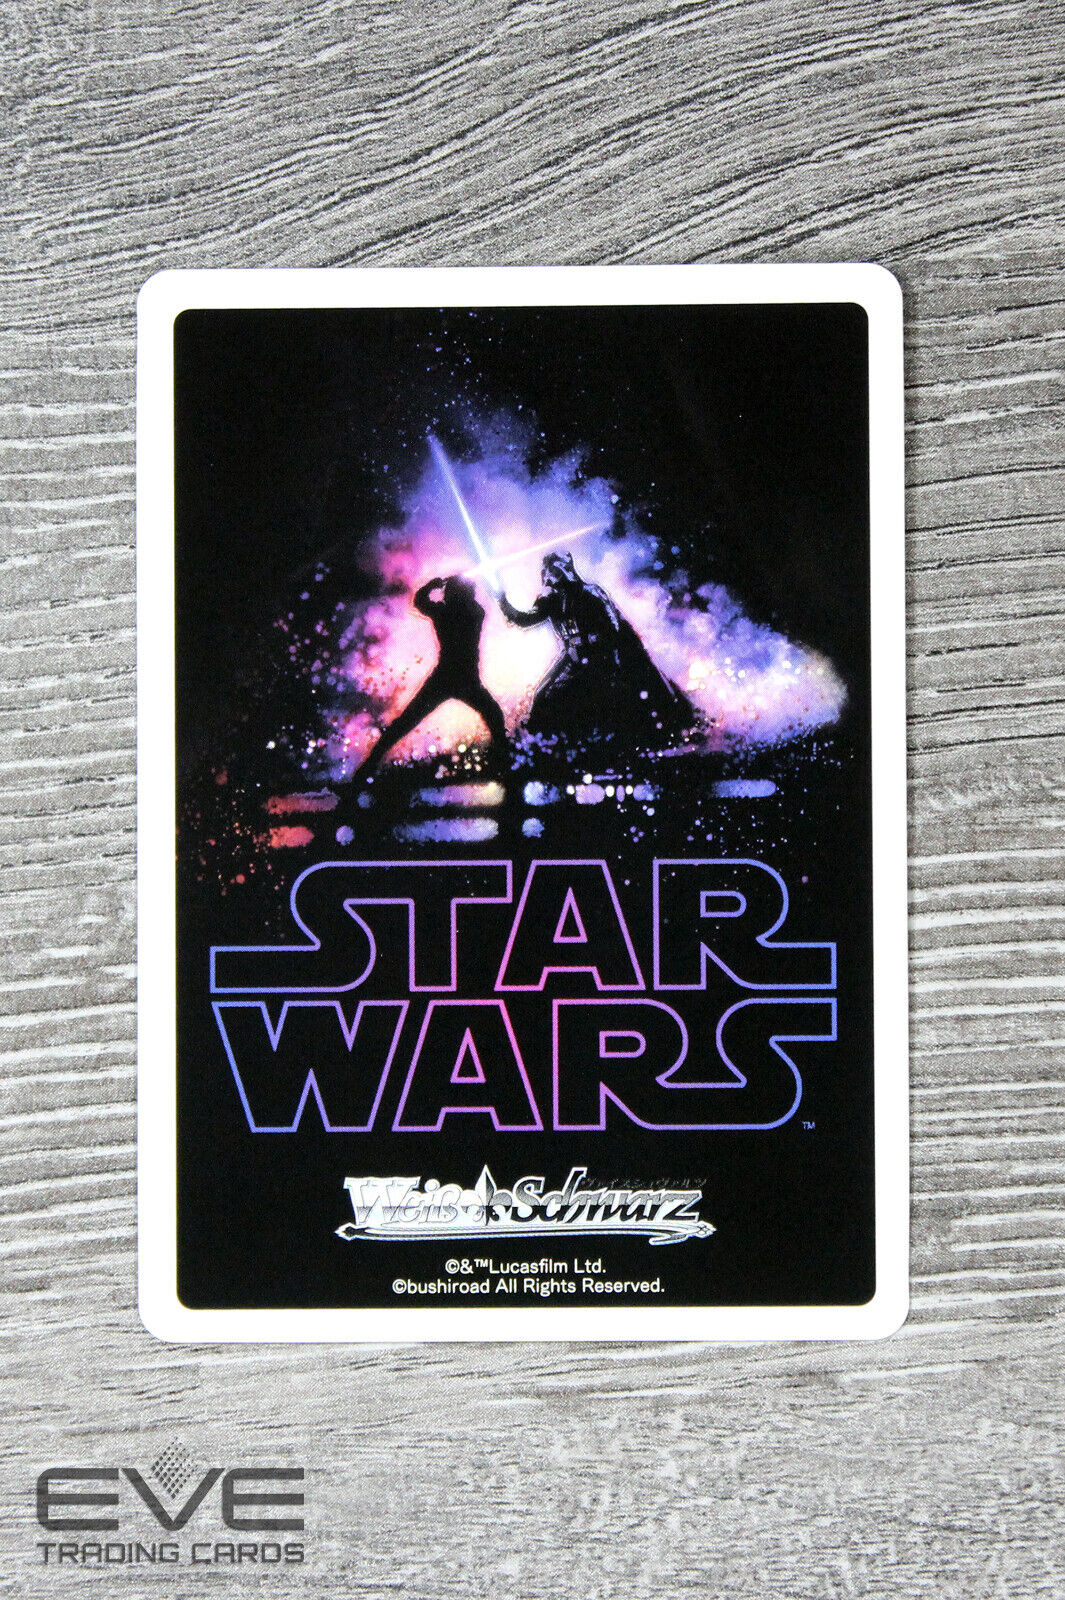 Weiss Schwarz Star Wars SW/S49-121 PR "Star Wars" Chewbacca NM/M